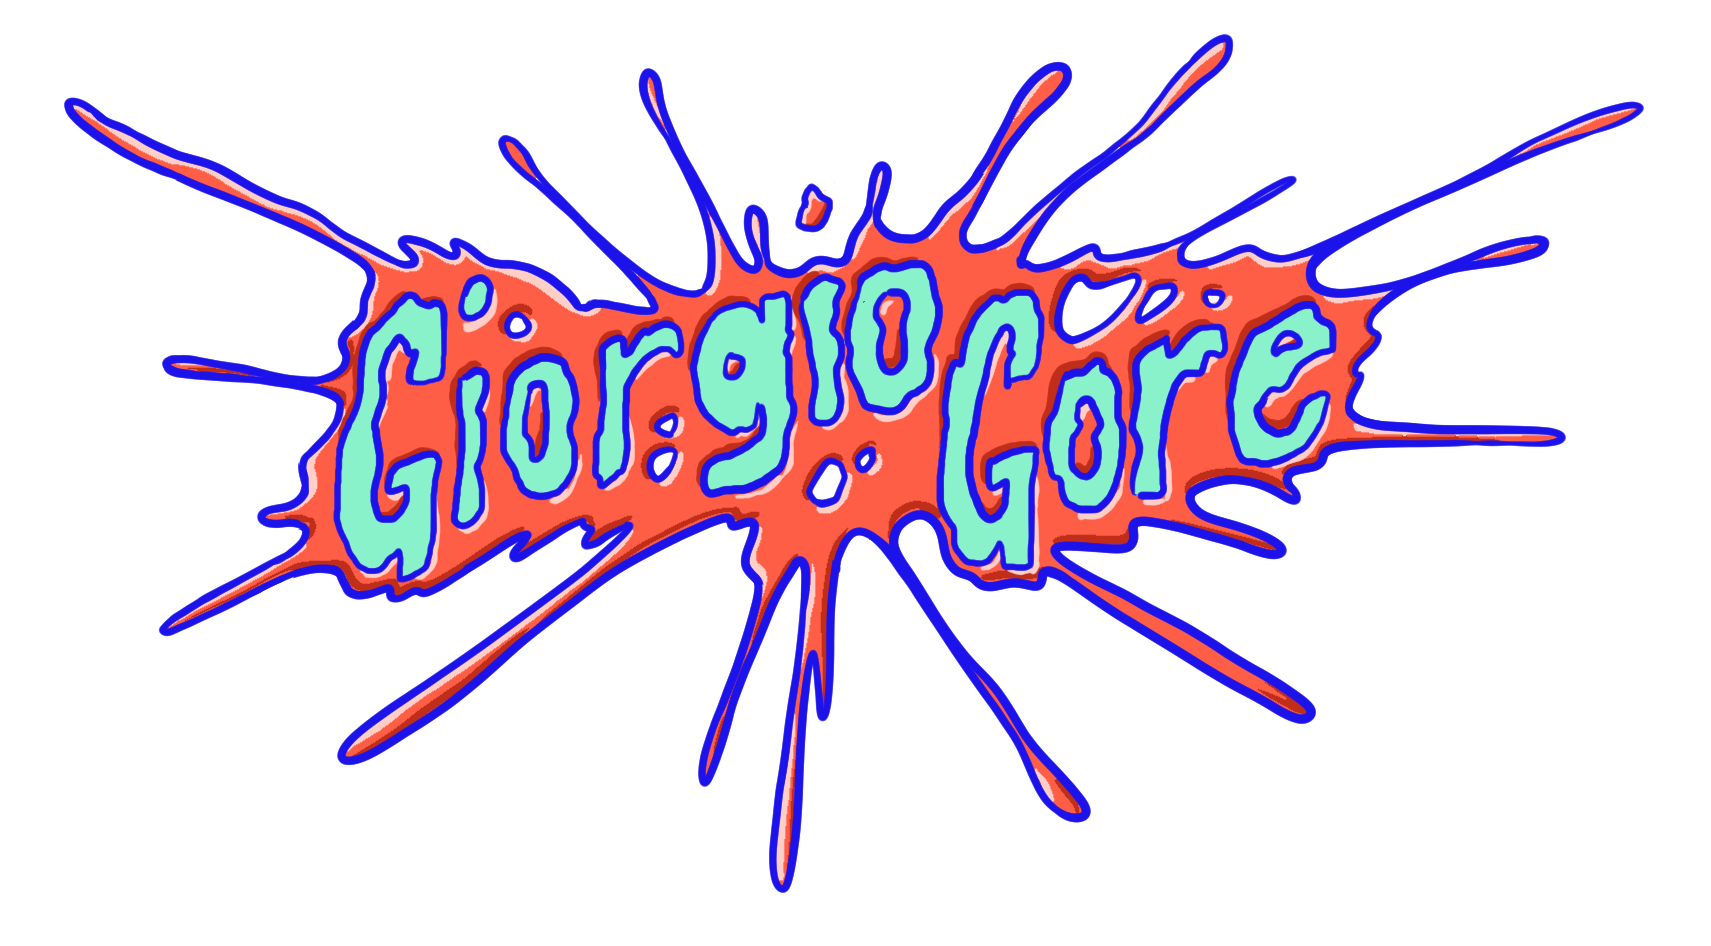 Giorgio Gore